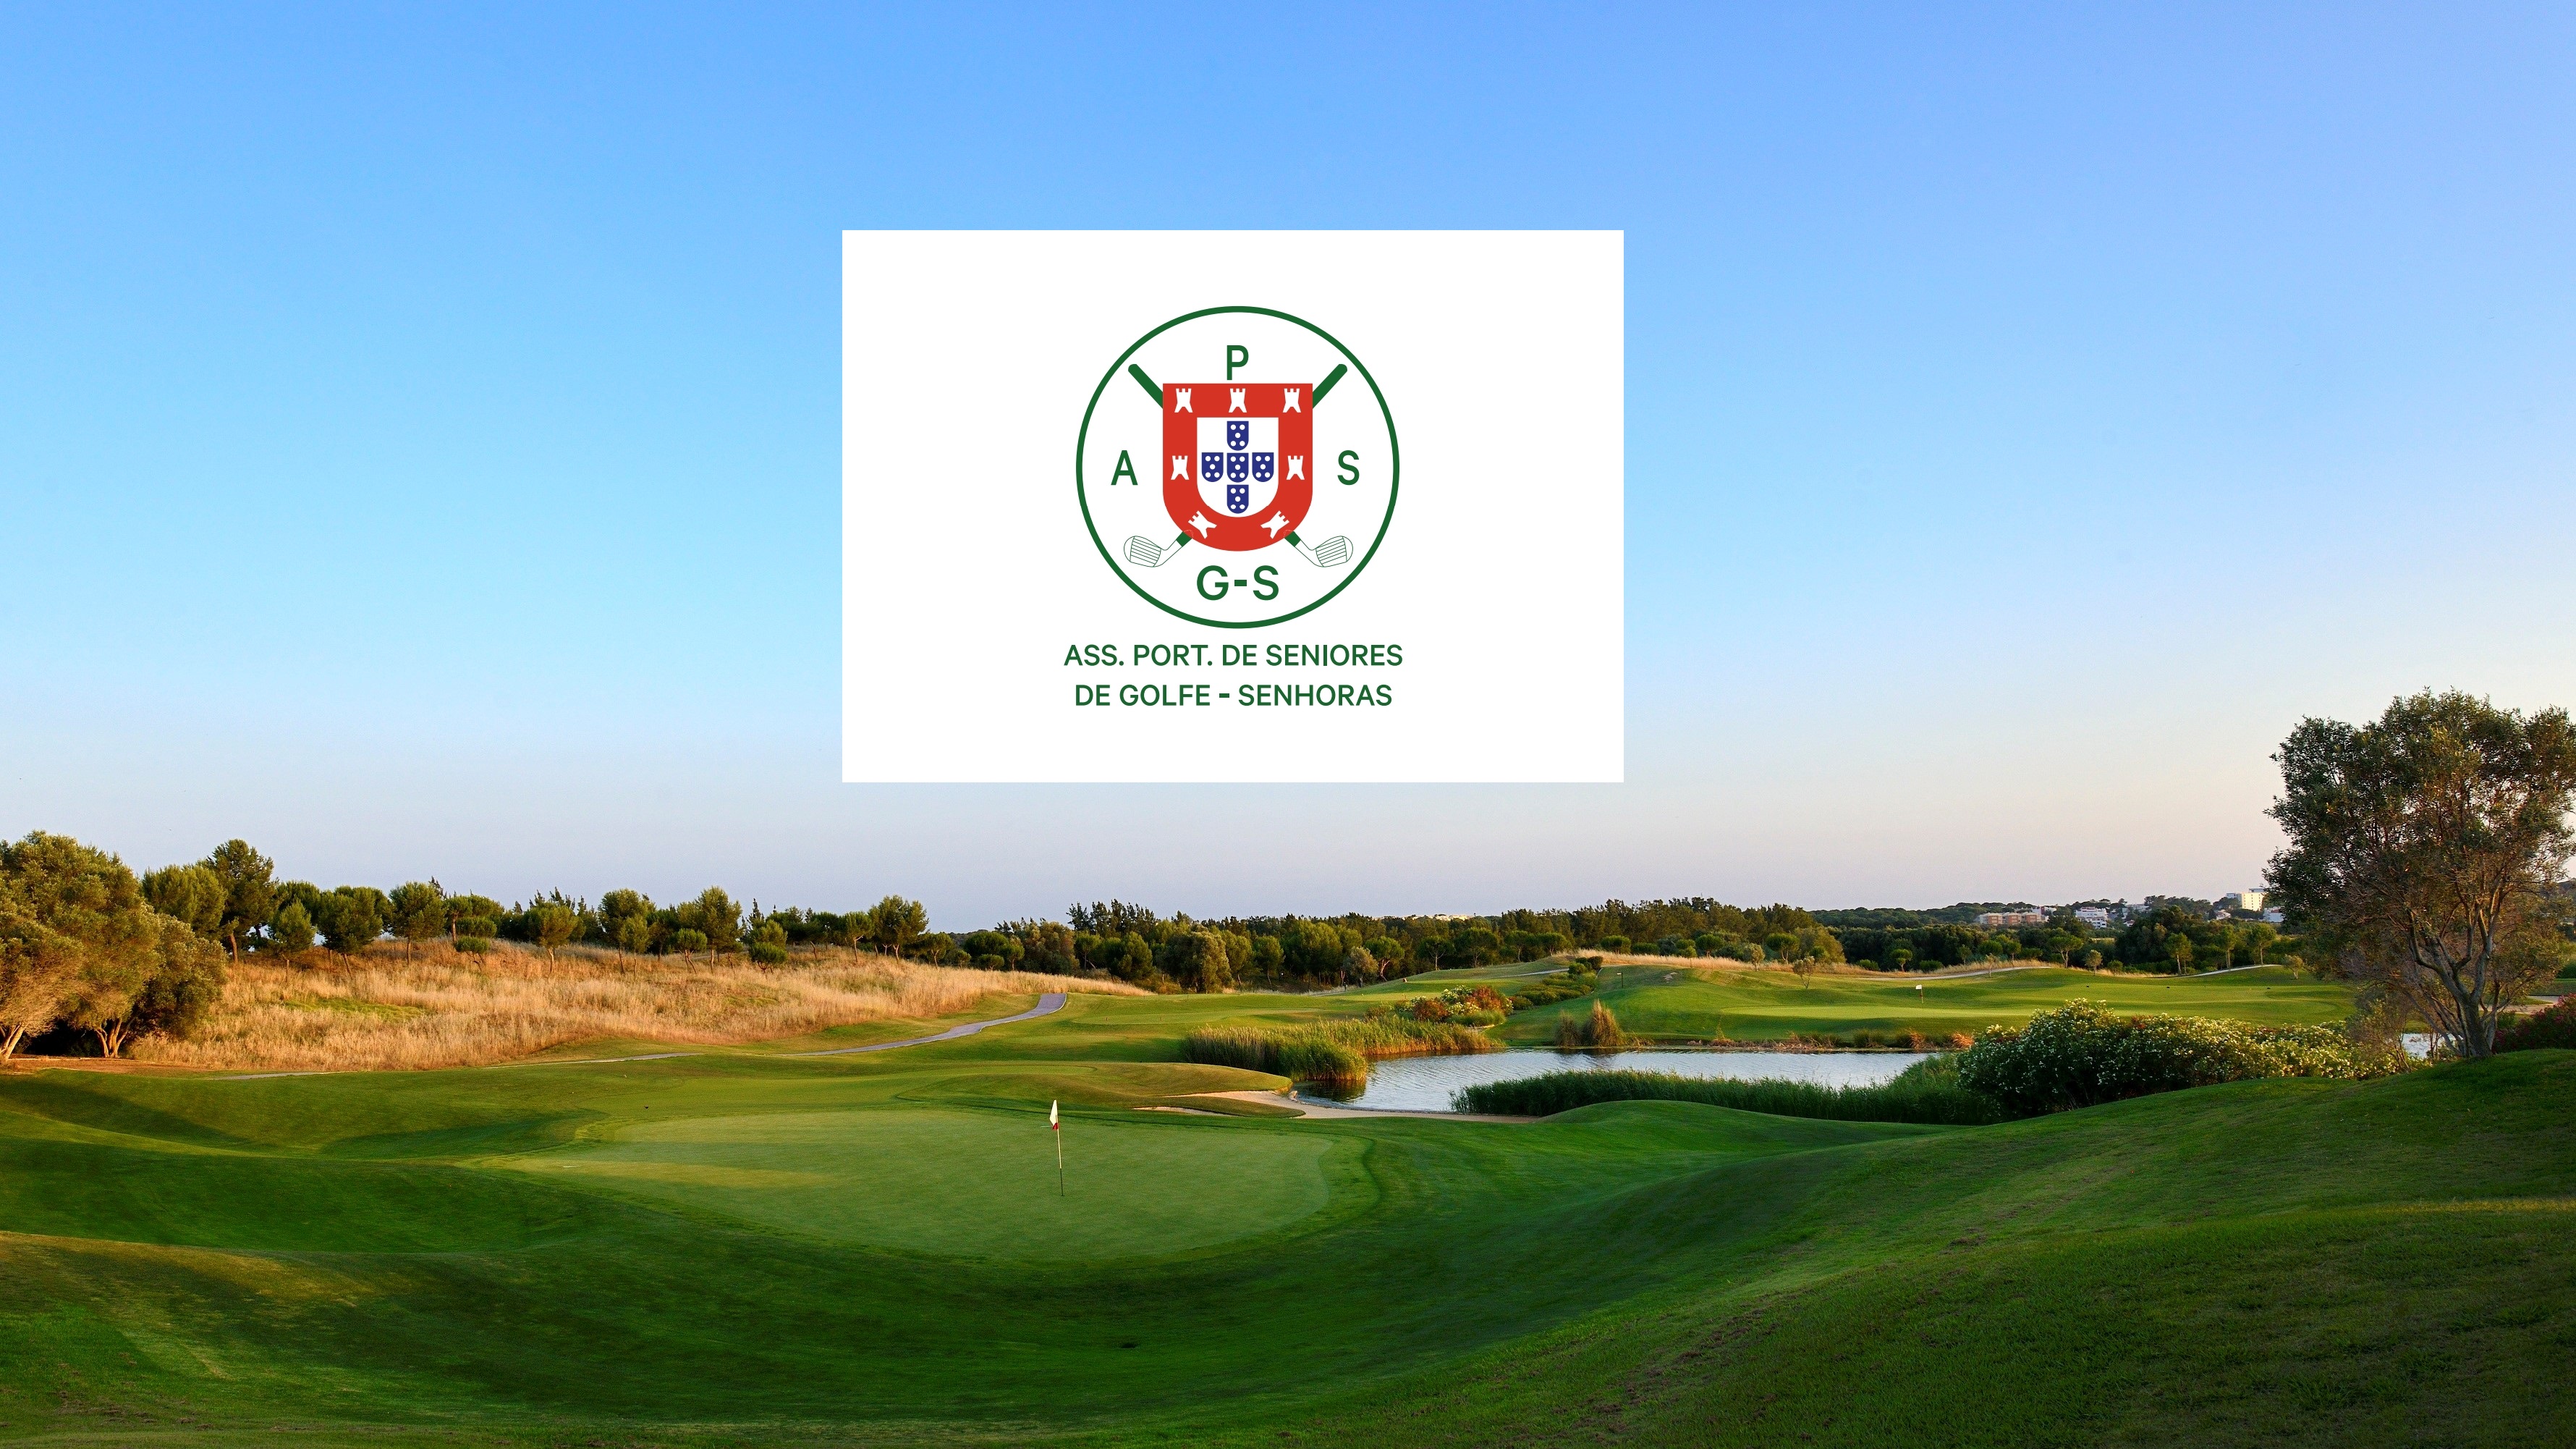 Campo de golfe onde se realiza o Torneio Associação Portuguesa de Seniores de Golfe - Senhoras